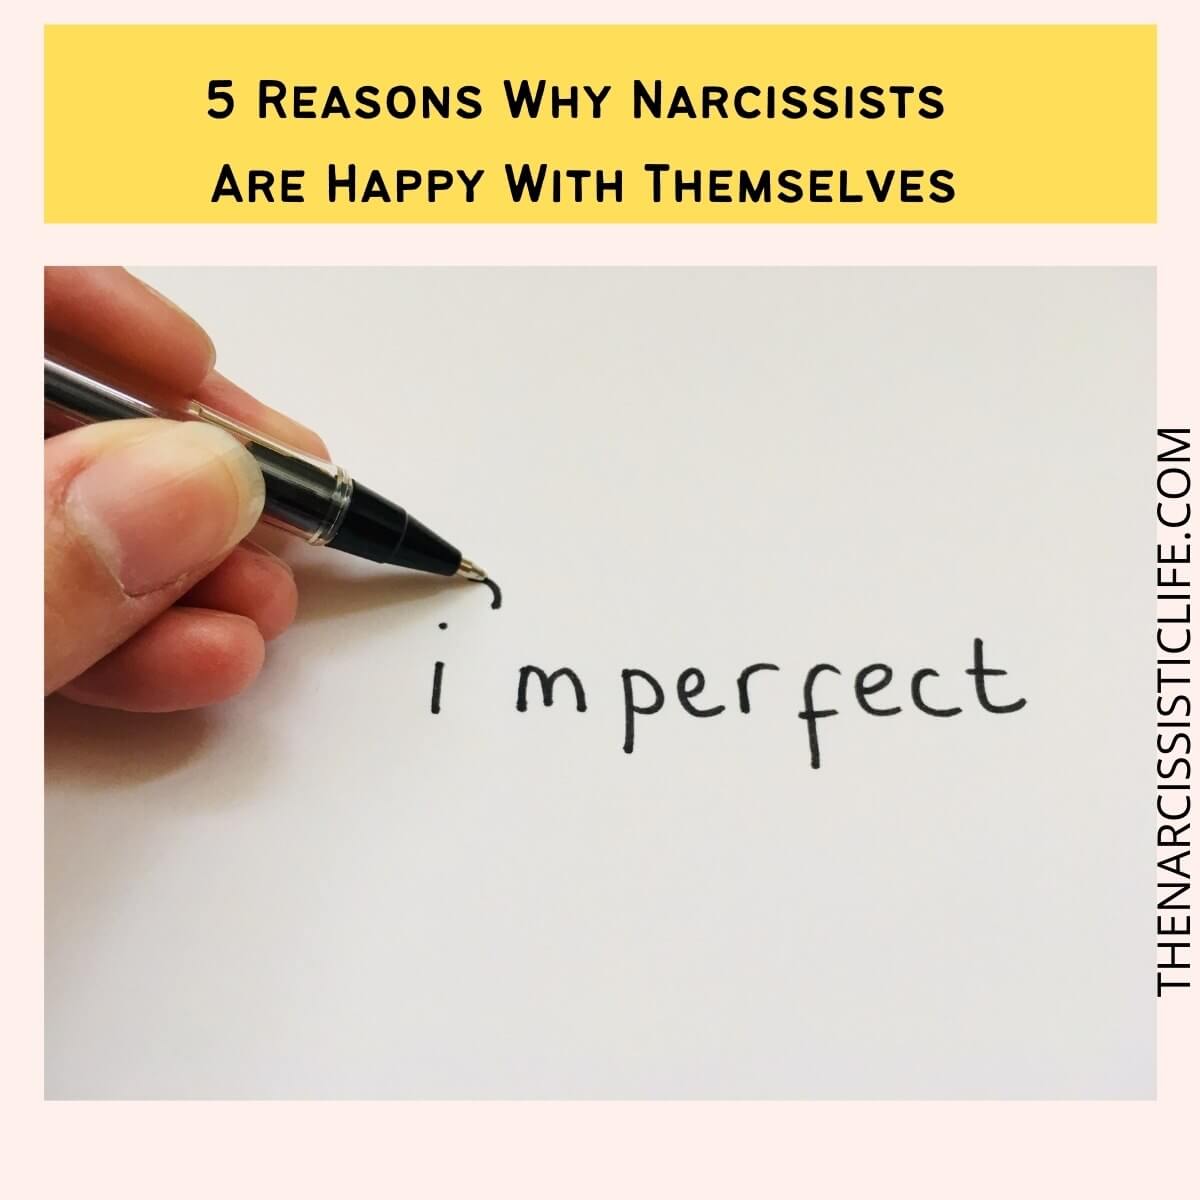 Kan narcissister nogensinde blive rigtigt lykkelige (narcissistisk)?